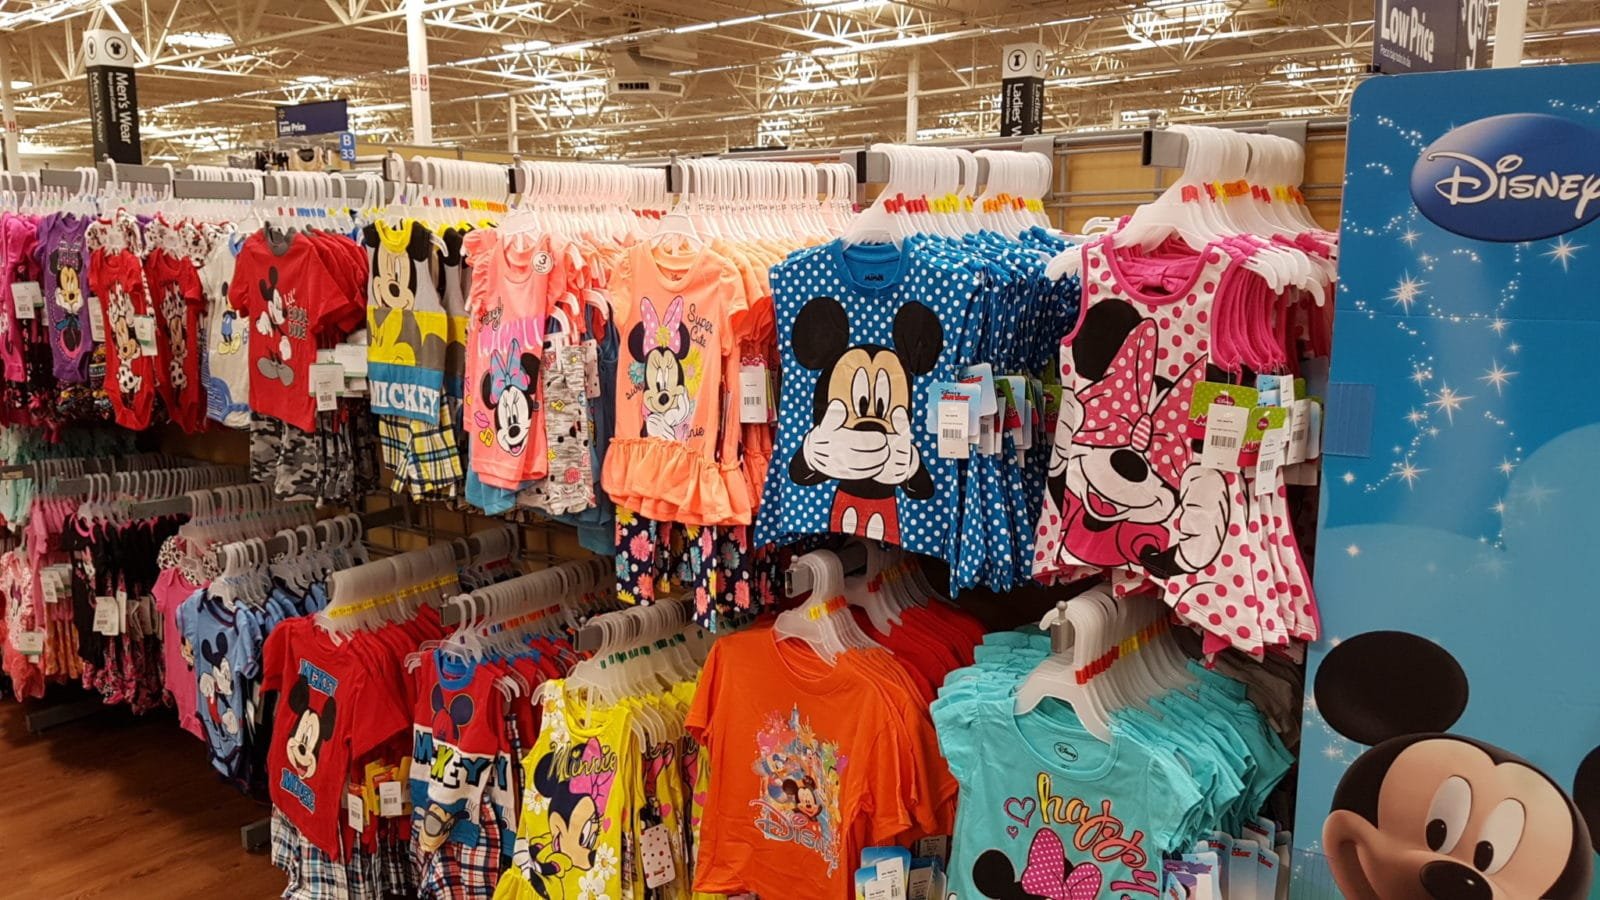 Walmart em Orlando: dicas para as compras - Vai pra Disney?